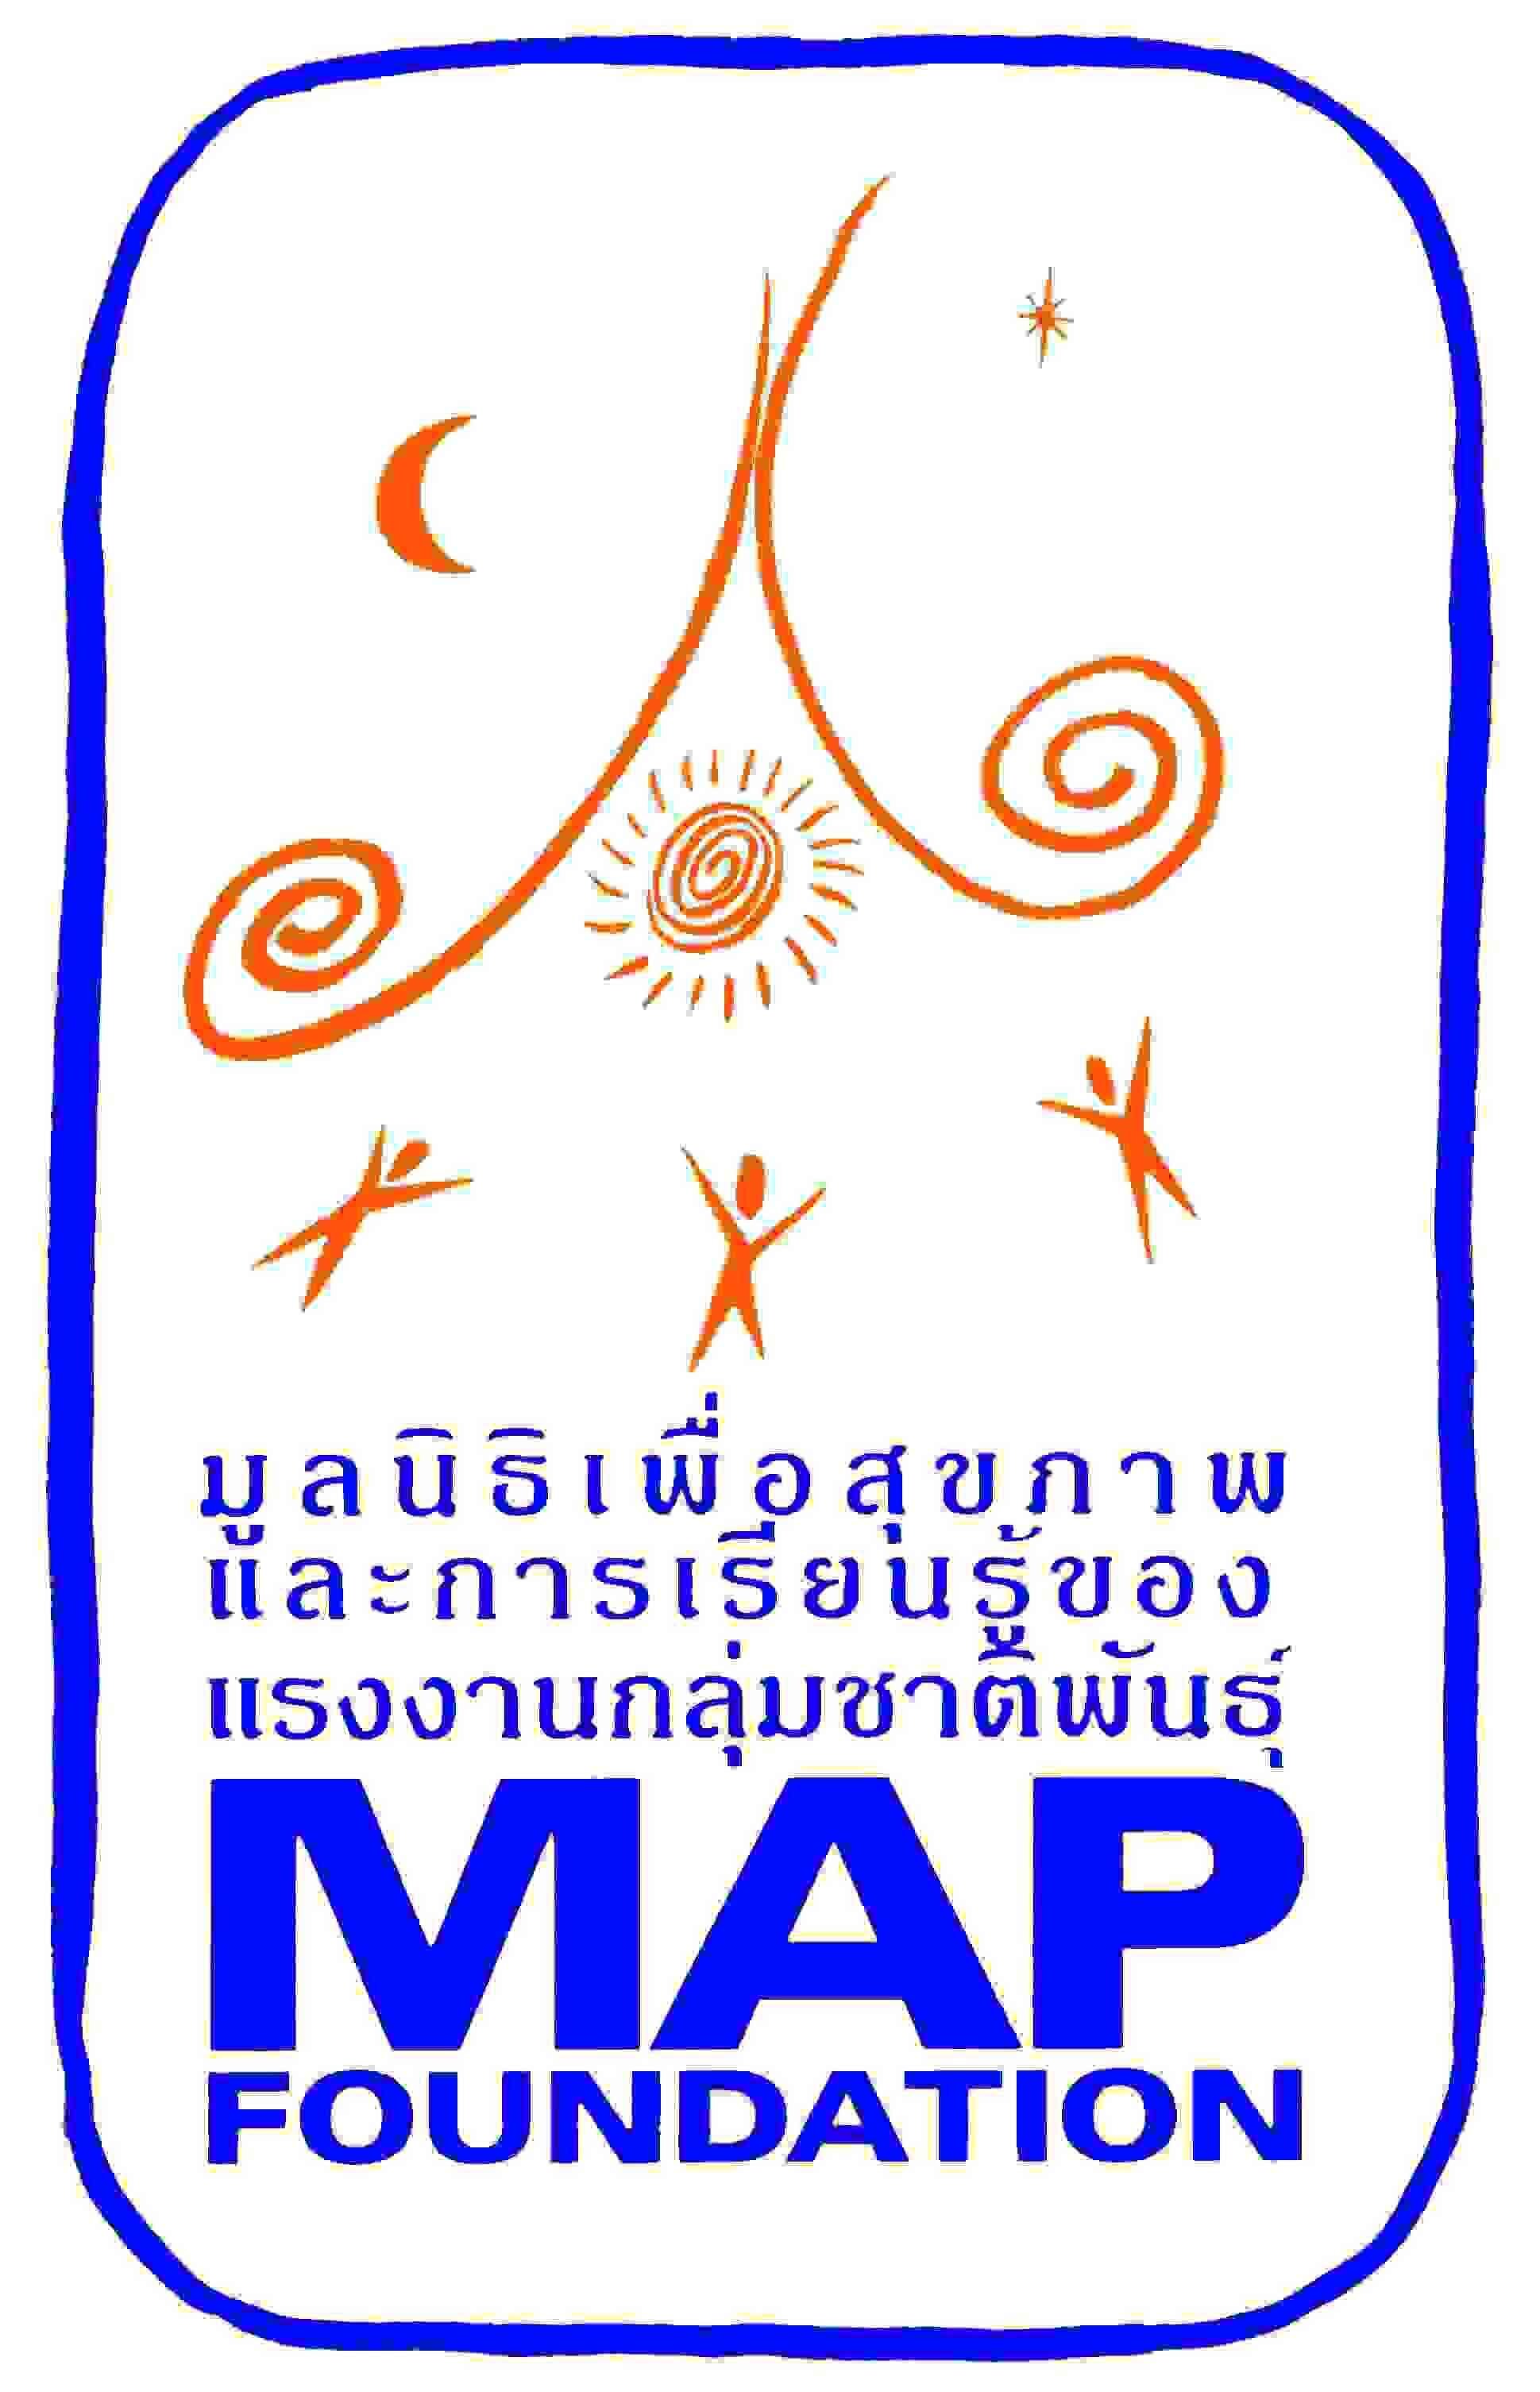 MAP_LOGO_t_s.jpg